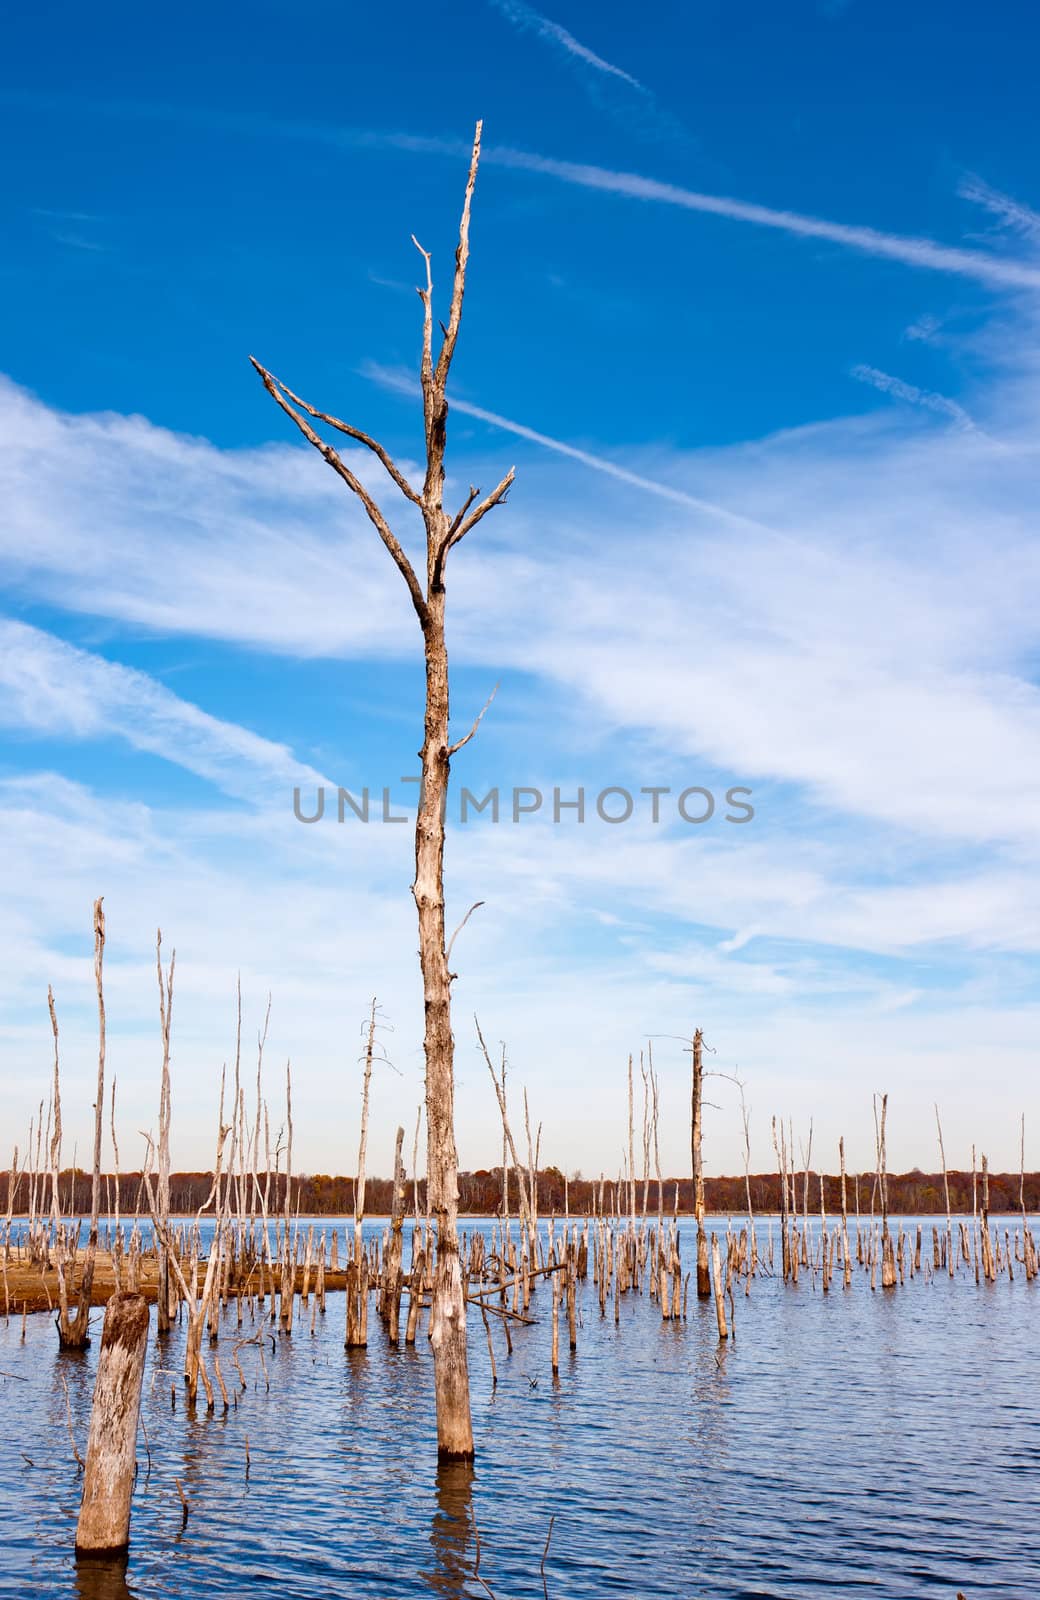 Dead Trees in the Water by sbonk